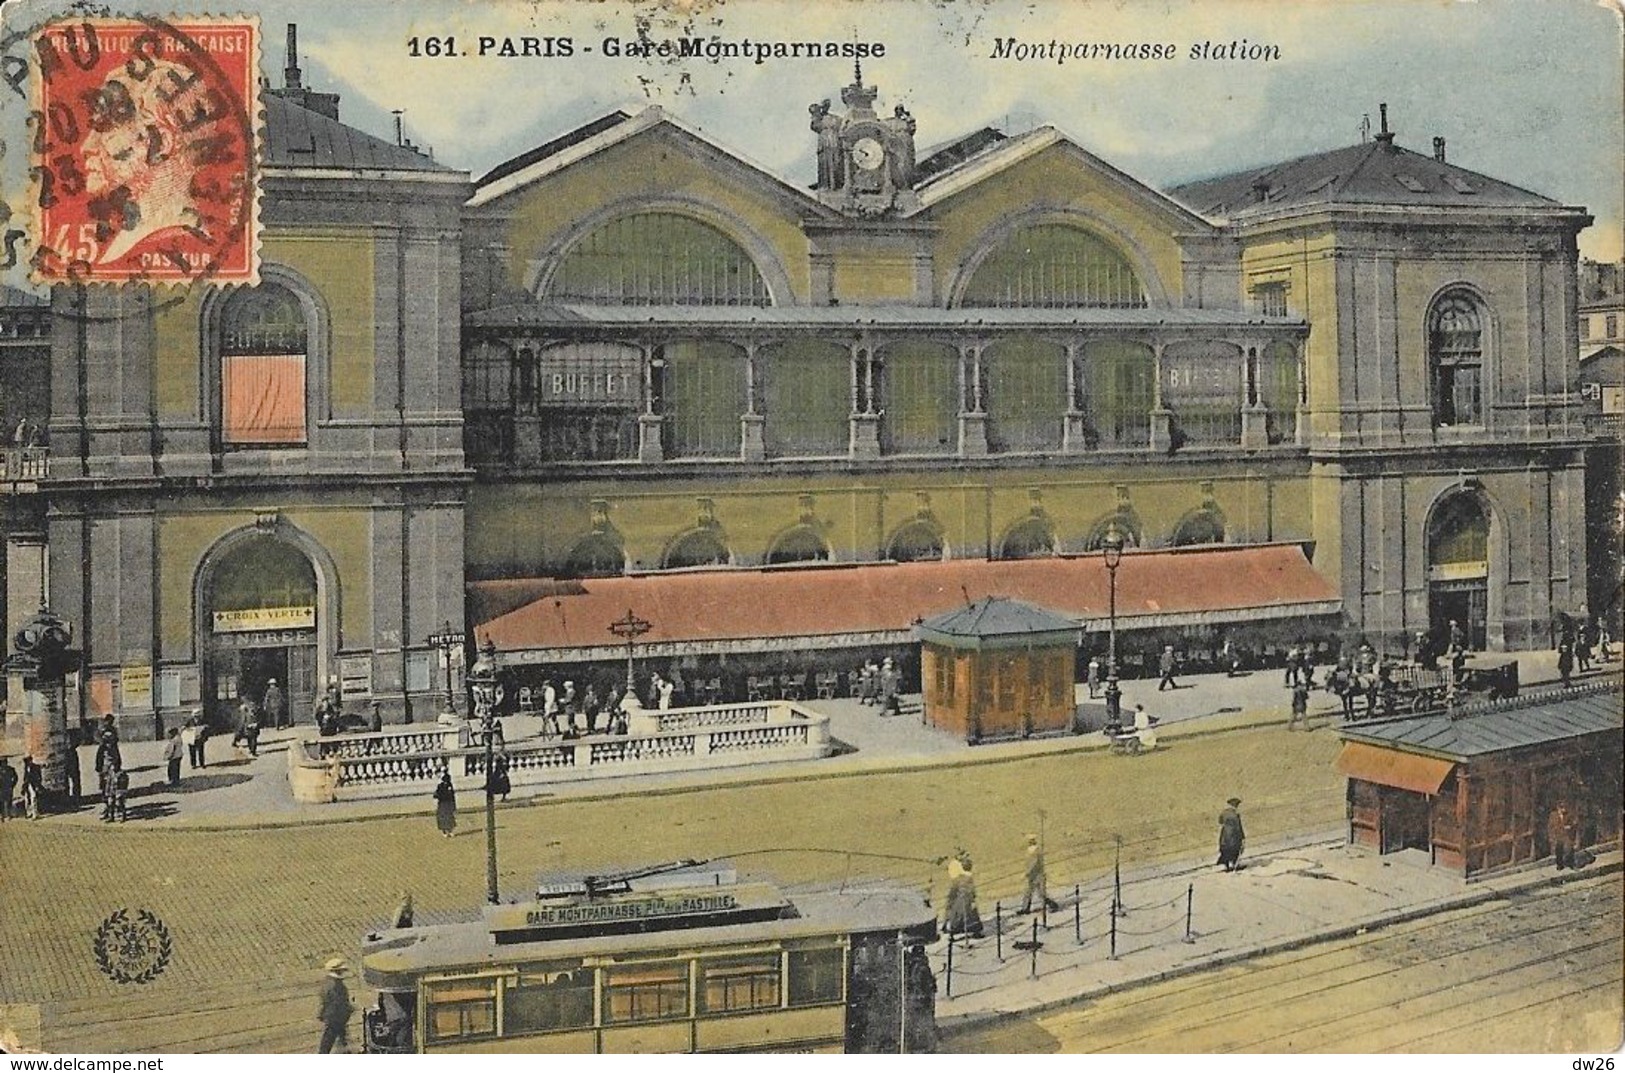 Paris - Gare Montparnasse (Station) Tramway - Carte L'Abeille N° 161 Colorisée - Métro Parisien, Gares